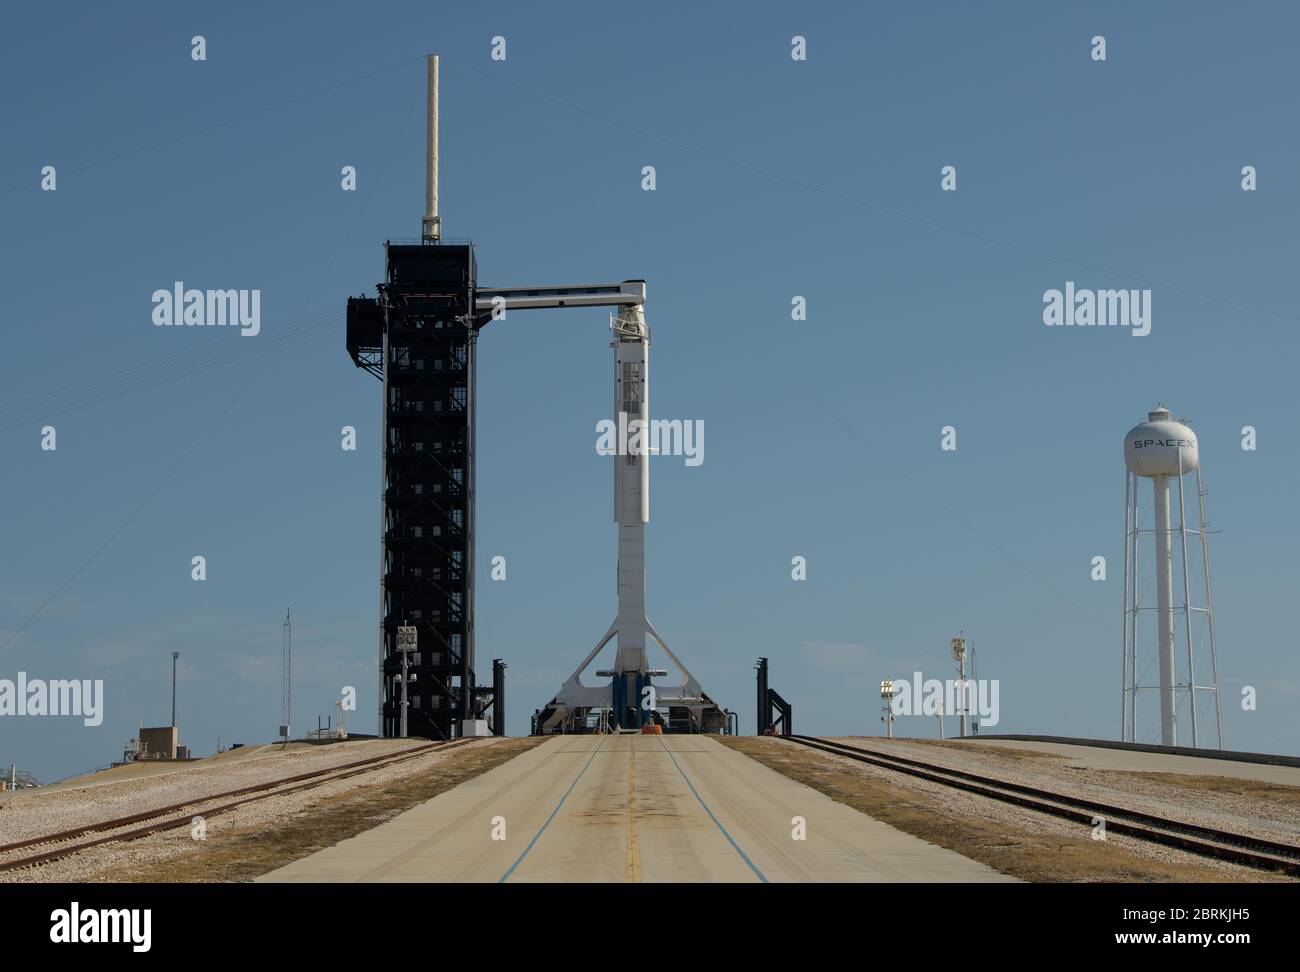 Cape Canaveral, Vereinigte Staaten von Amerika. 21 Mai 2020. Die SpaceX Falcon 9 Rakete, die die Crew Dragon Raumsonde trägt, ist in einer vertikalen Position sicher, wobei der Crew-Zufahrtsarm für den AT Launch Complex 39A für die Demo-2 Mission im Kennedy Space Center vorbereitet ist 21. Mai 2020 in Cape Canaveral, Florida. Die NASA SpaceX Demo-2 Mission ist der erste kommerzielle Start, der Astronauten zur Internationalen Raumstation transportiert. Quelle: Bill Ingalls/NASA/Alamy Live News Stockfoto